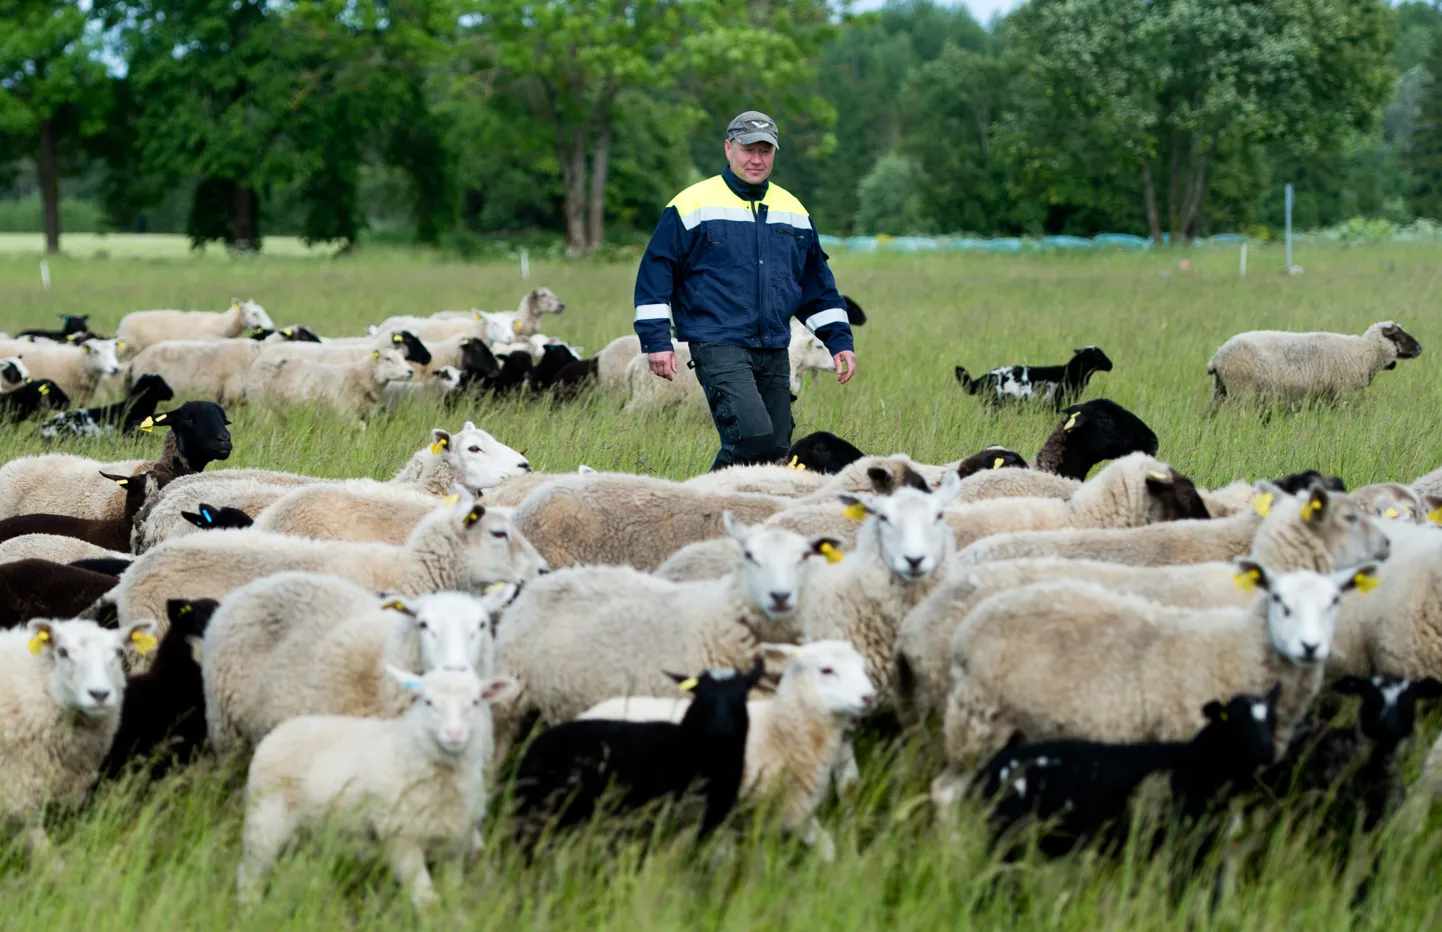 Rain Raudsepa karjatab ise oma 700-pealist lambakarja. Mehel sõnul peab tema lambakasvataja arvestama ka n-ö loomulike kadudega.